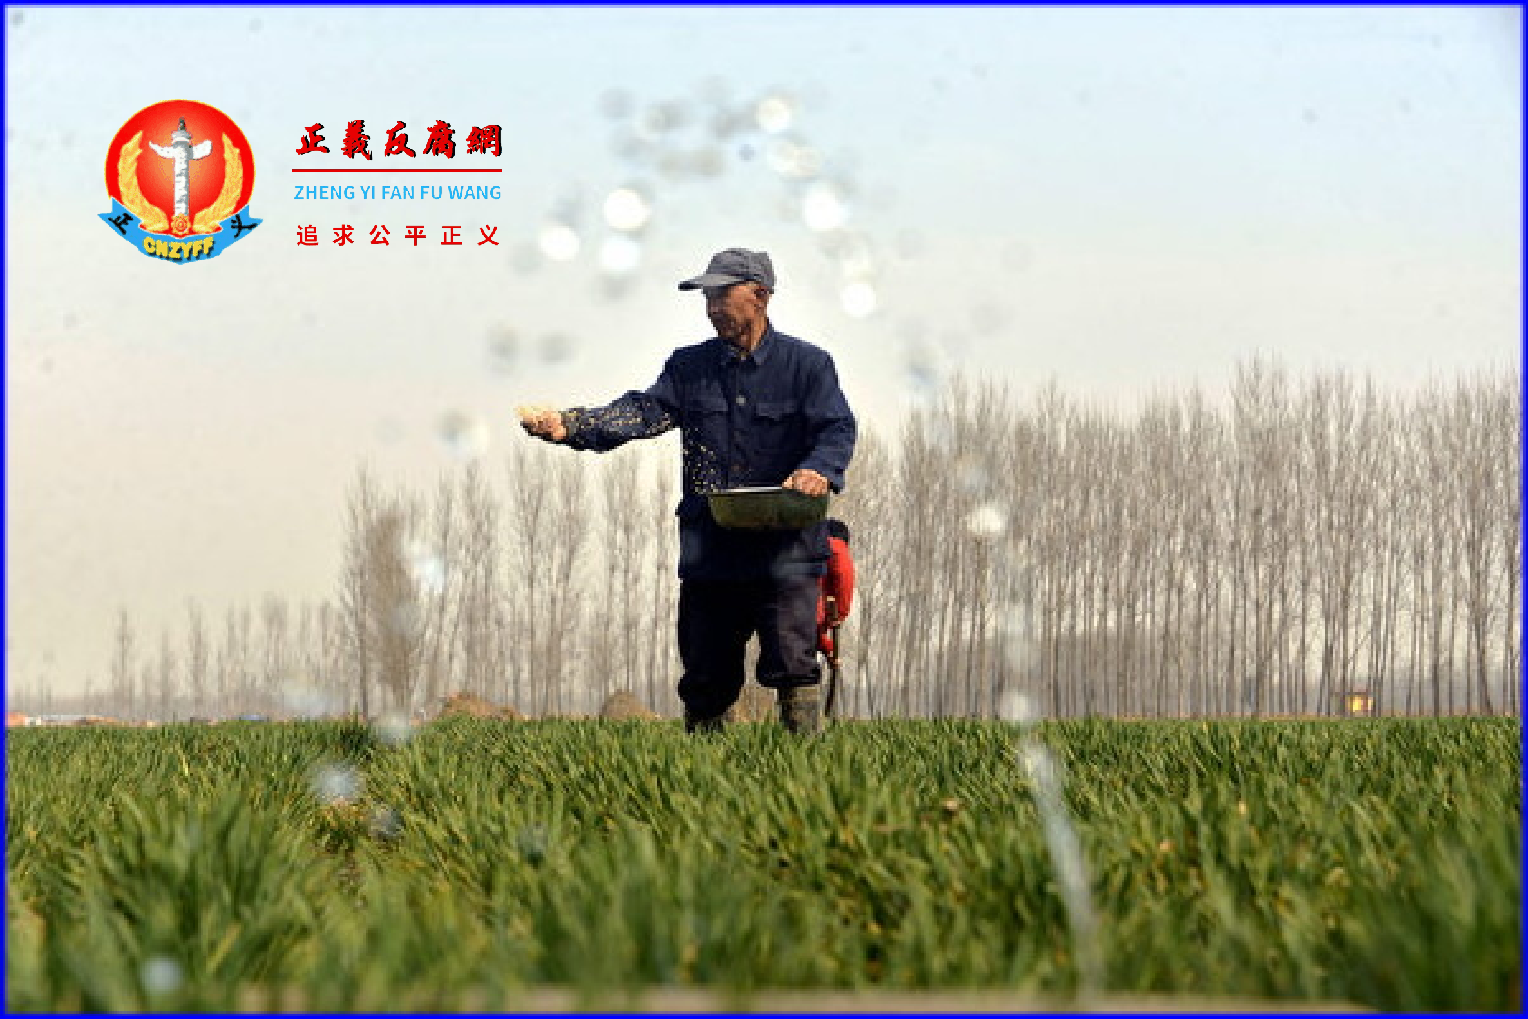 农民不愿种地 中国粮食安全问题严峻